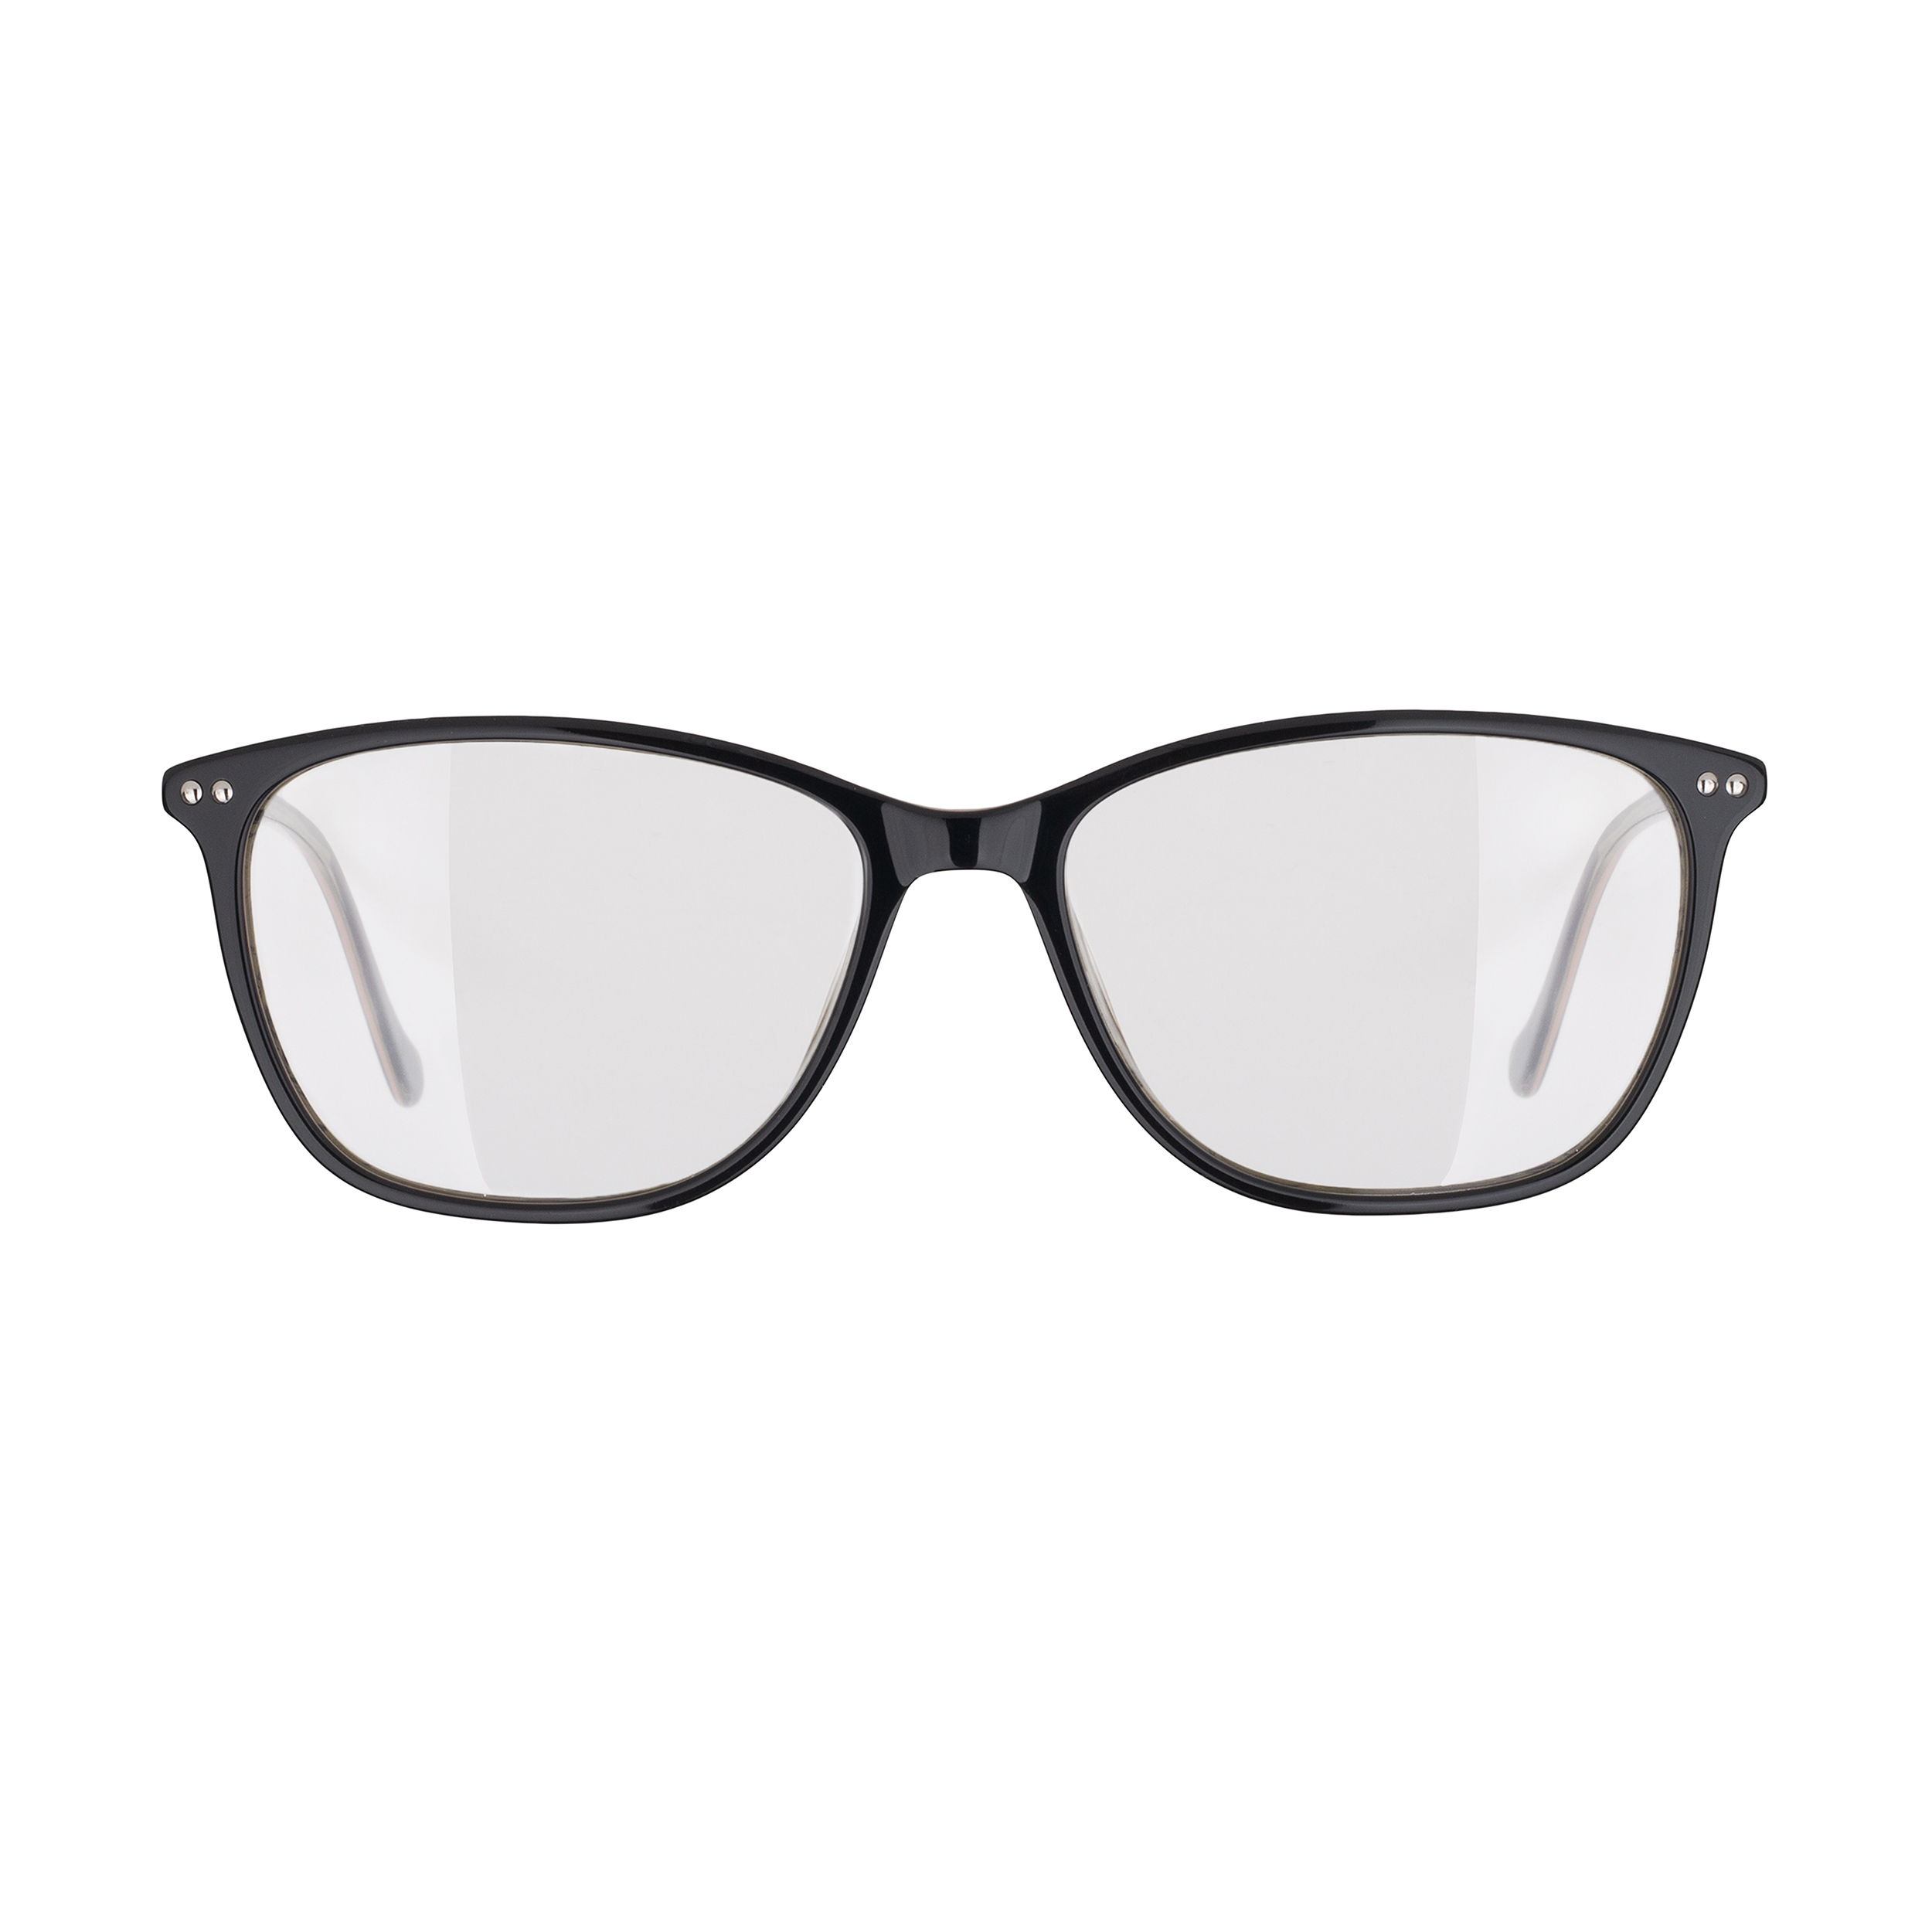 فریم عینک طبی مدل CB3922C6 Acetate Multi Layer